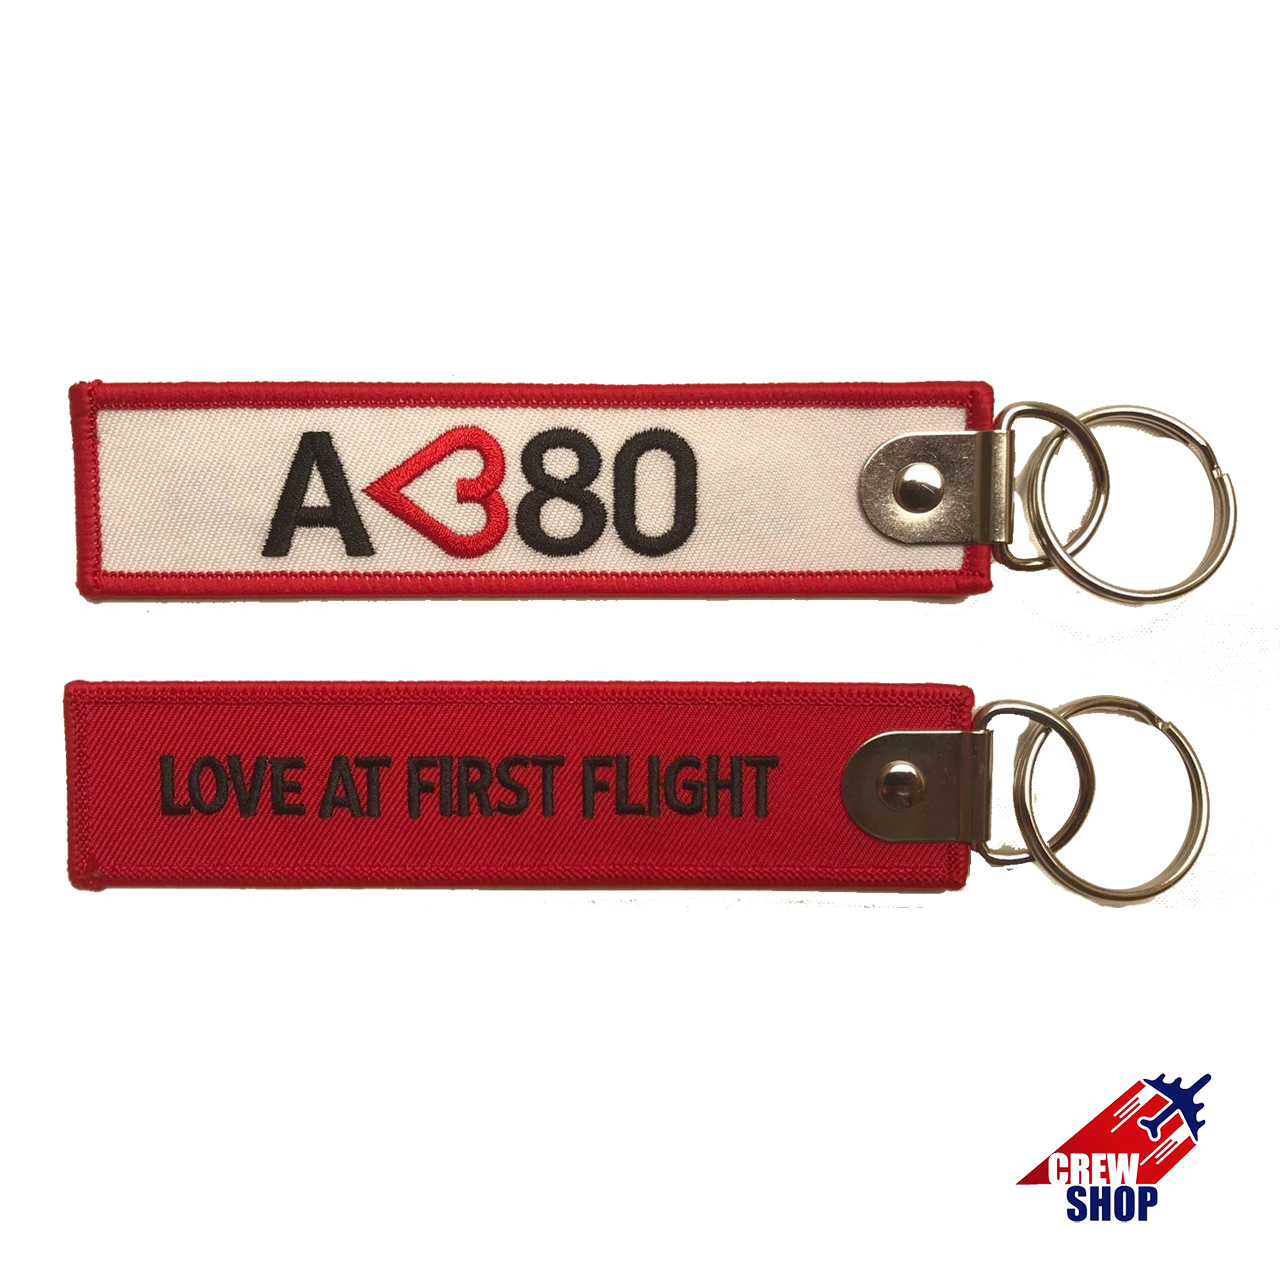 A- 380 LOVE AT FIRST FLIGHT